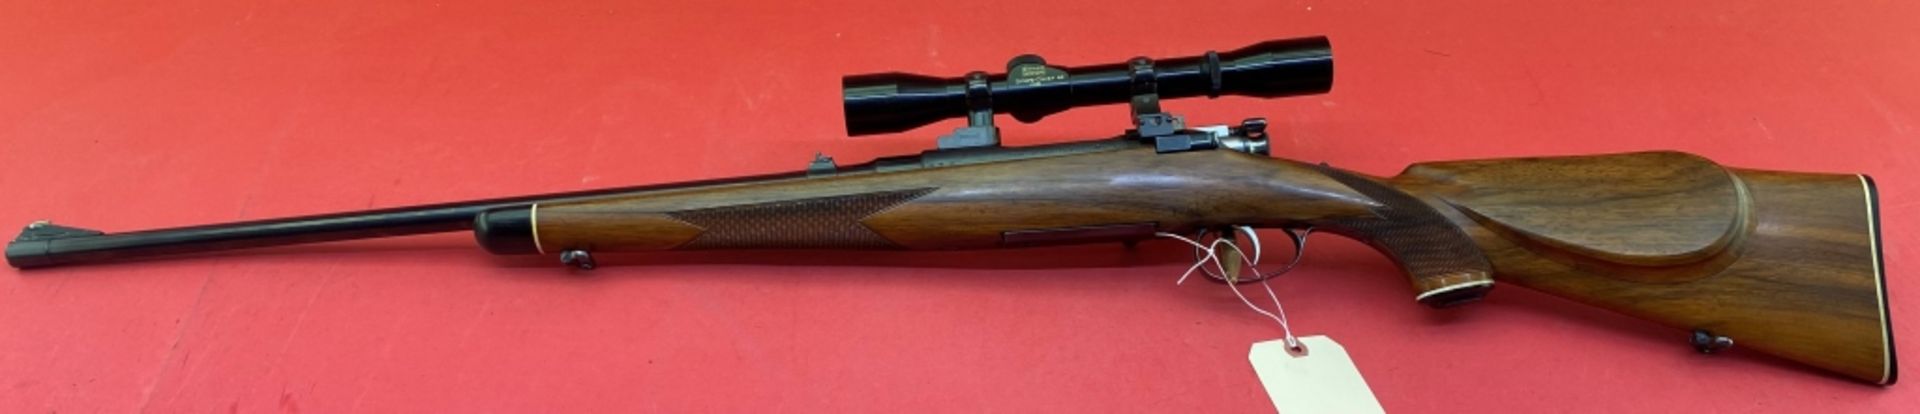 Browning 12 20 ga Shotgun - Image 7 of 7